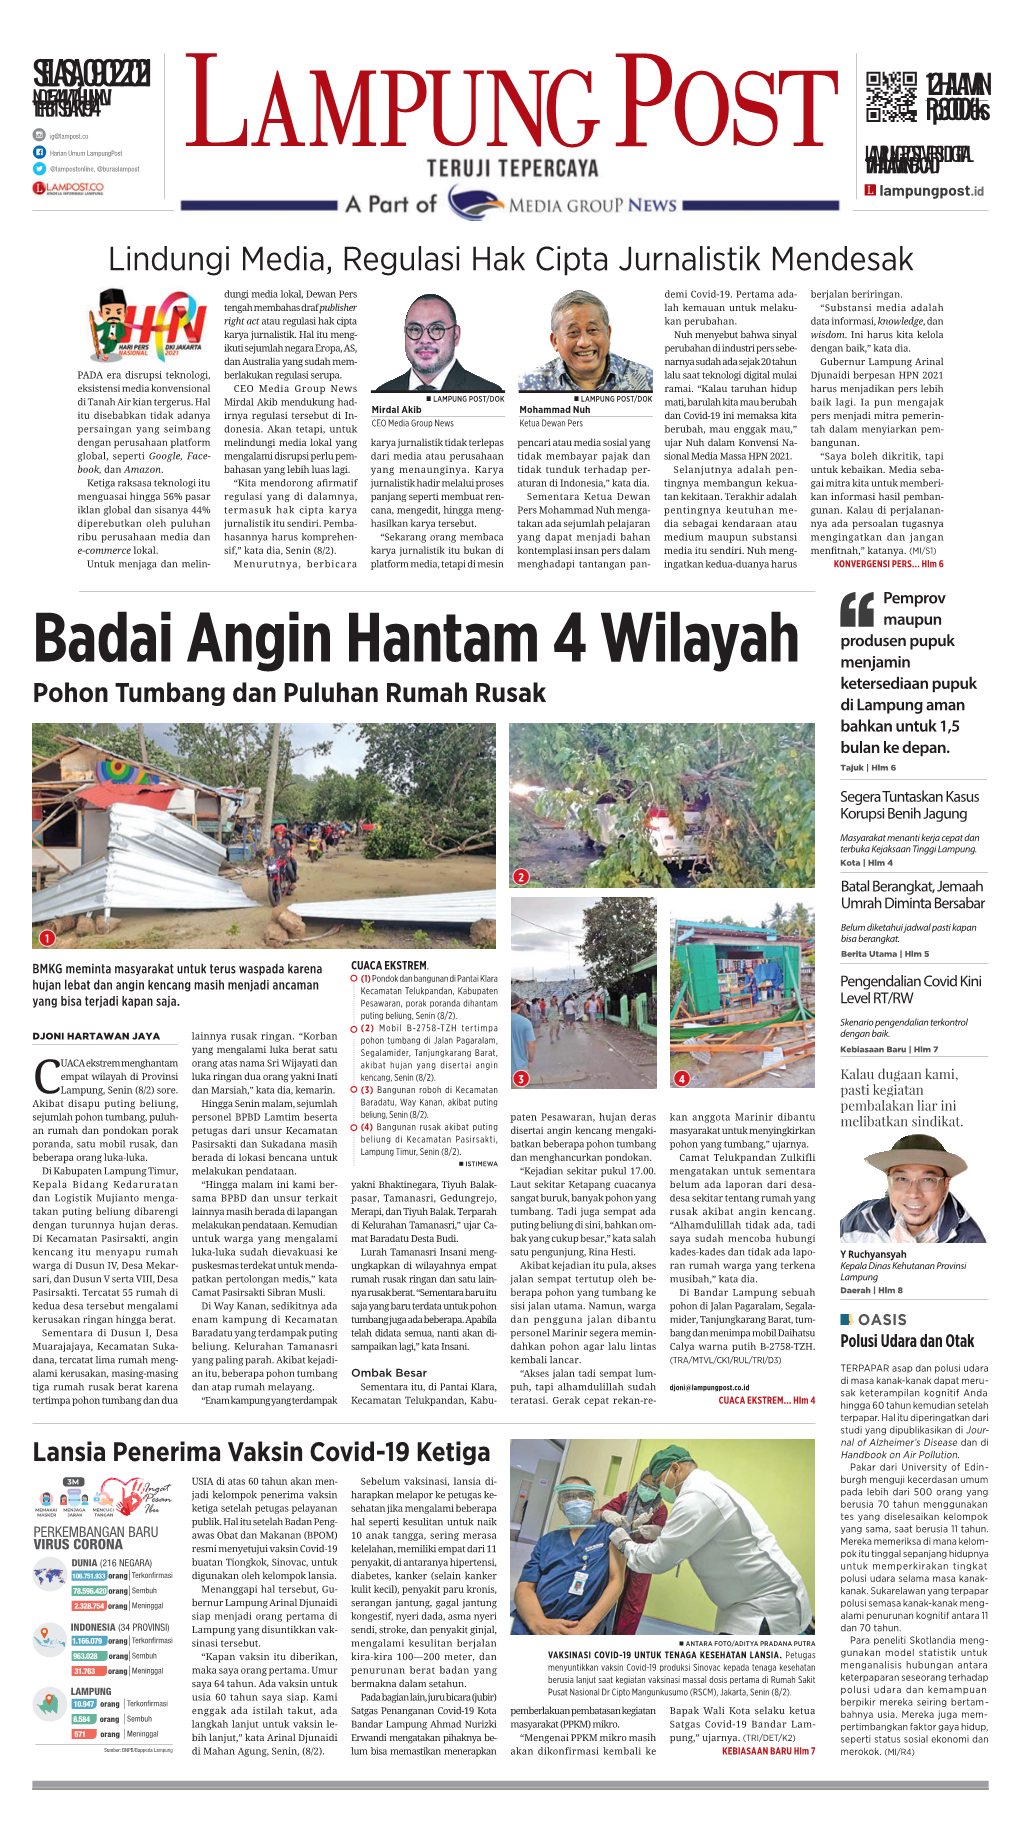 Badai Angin Hantam 4 Wilayah Menjamin Ketersediaan Pupuk Pohon Tumbang Dan Puluhan Rumah Rusak Di Lampung Aman Bahkan Untuk 1,5 Bulan Ke Depan